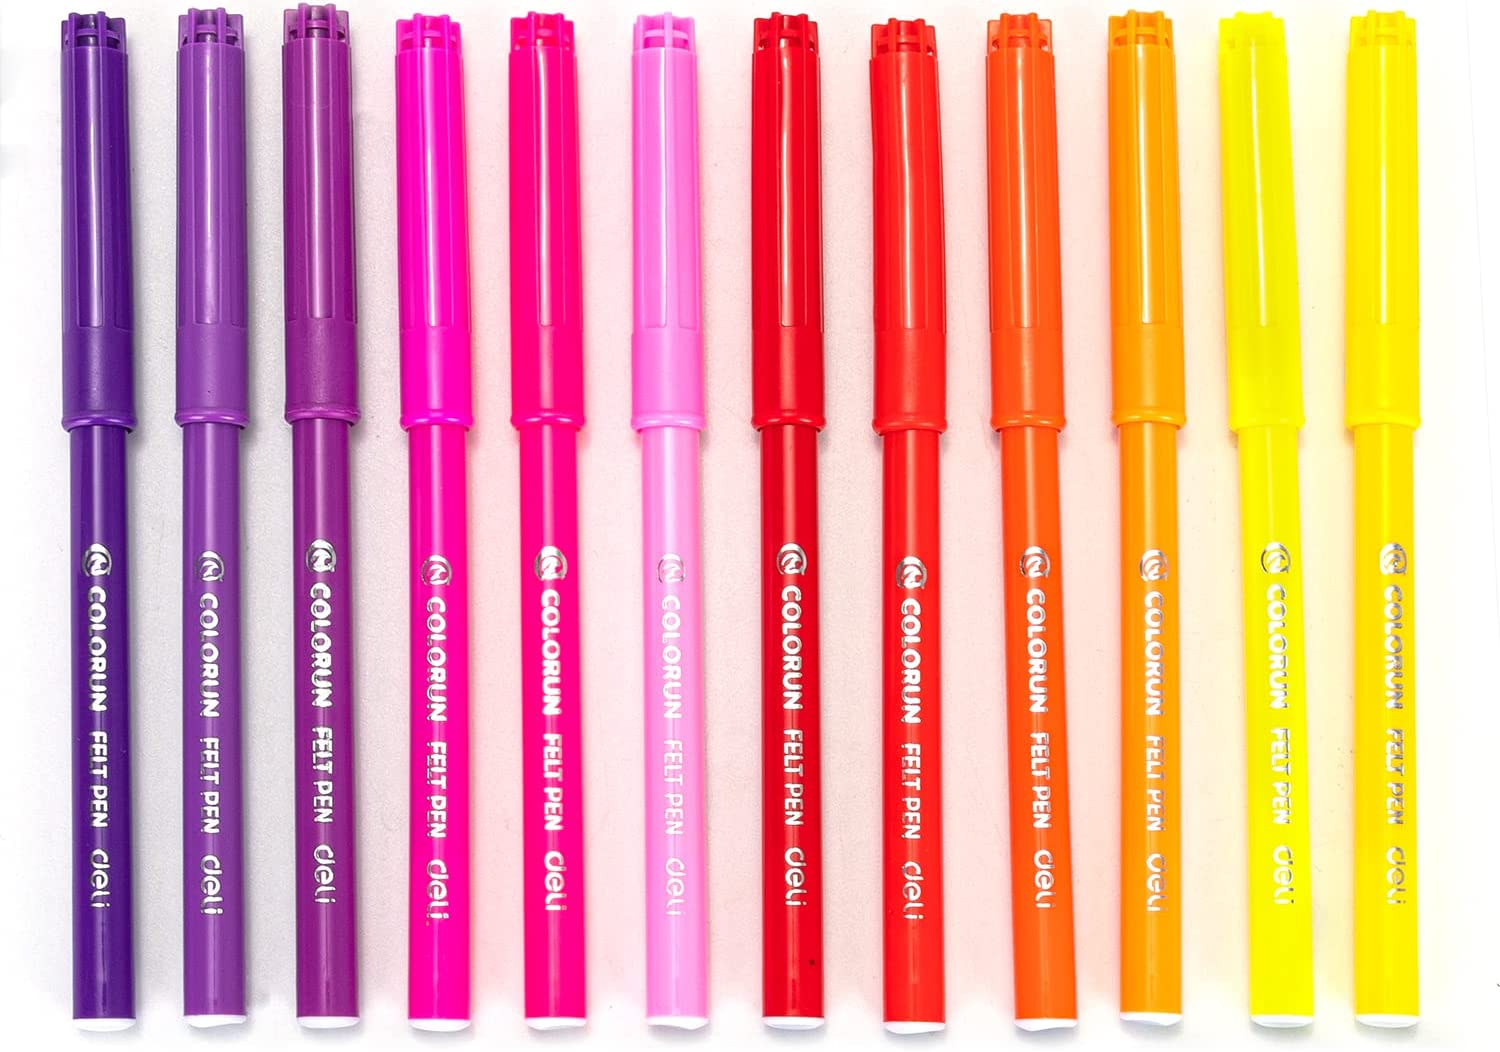 Deli Felt Pen Set of 24 Colors EC10023